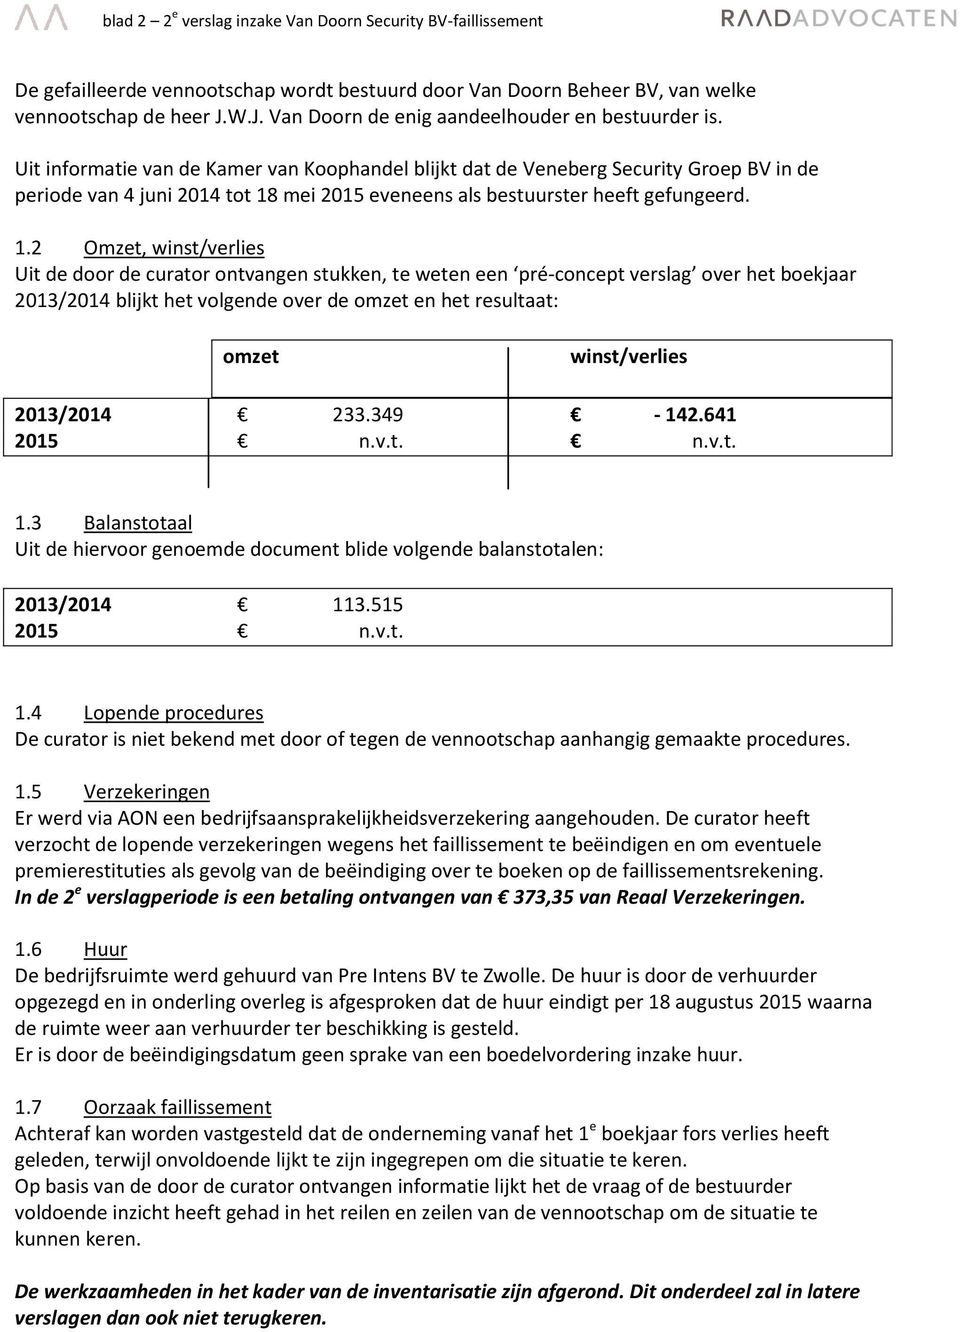 Uit informatie van de Kamer van Koophandel blijkt dat de Veneberg Security Groep BV in de periode van 4 juni 2014 tot 18